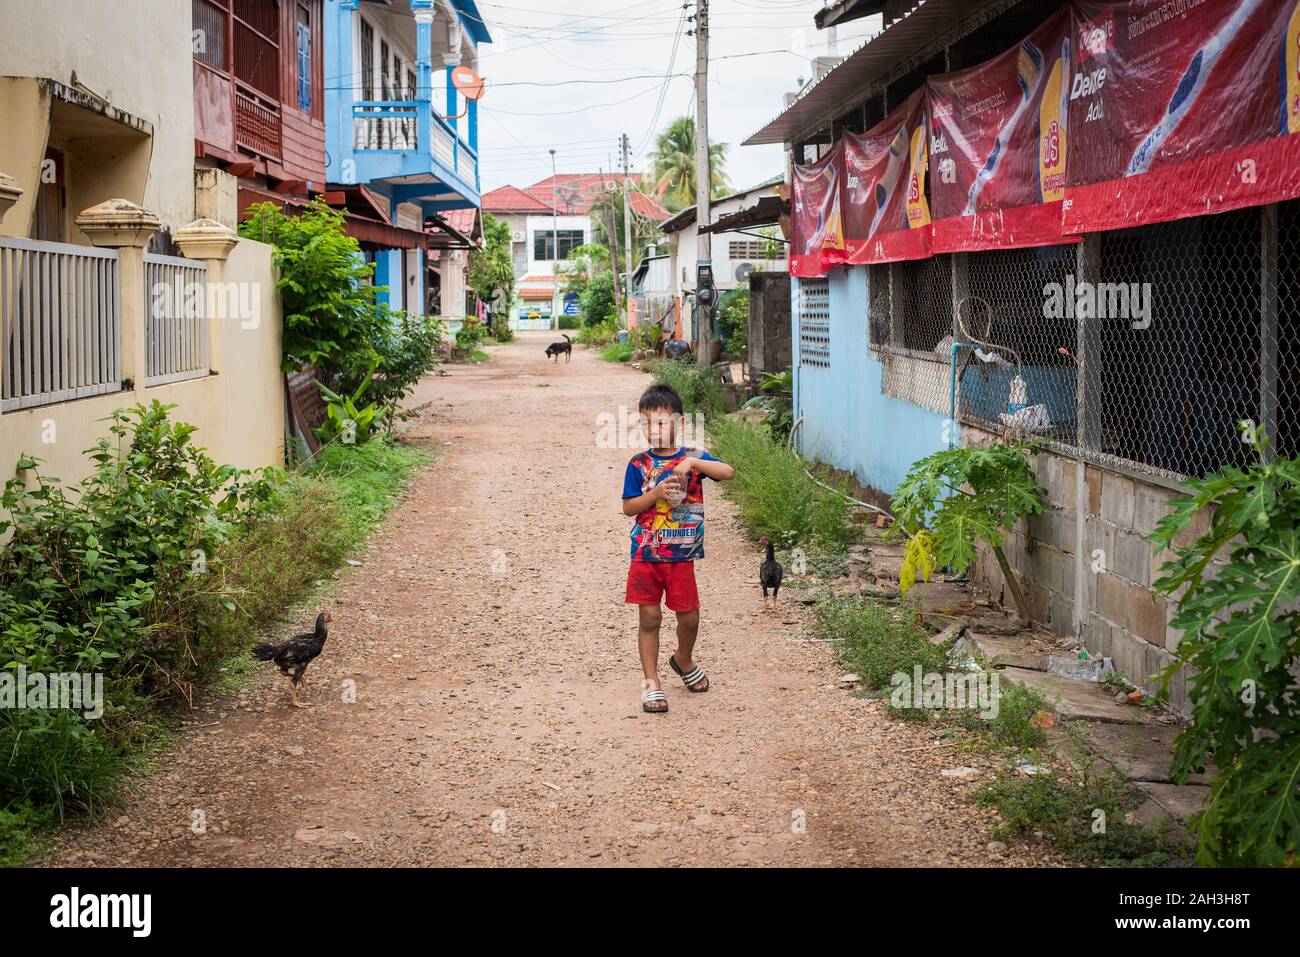 Boy walking on street in Paske, Laos Stock Photo